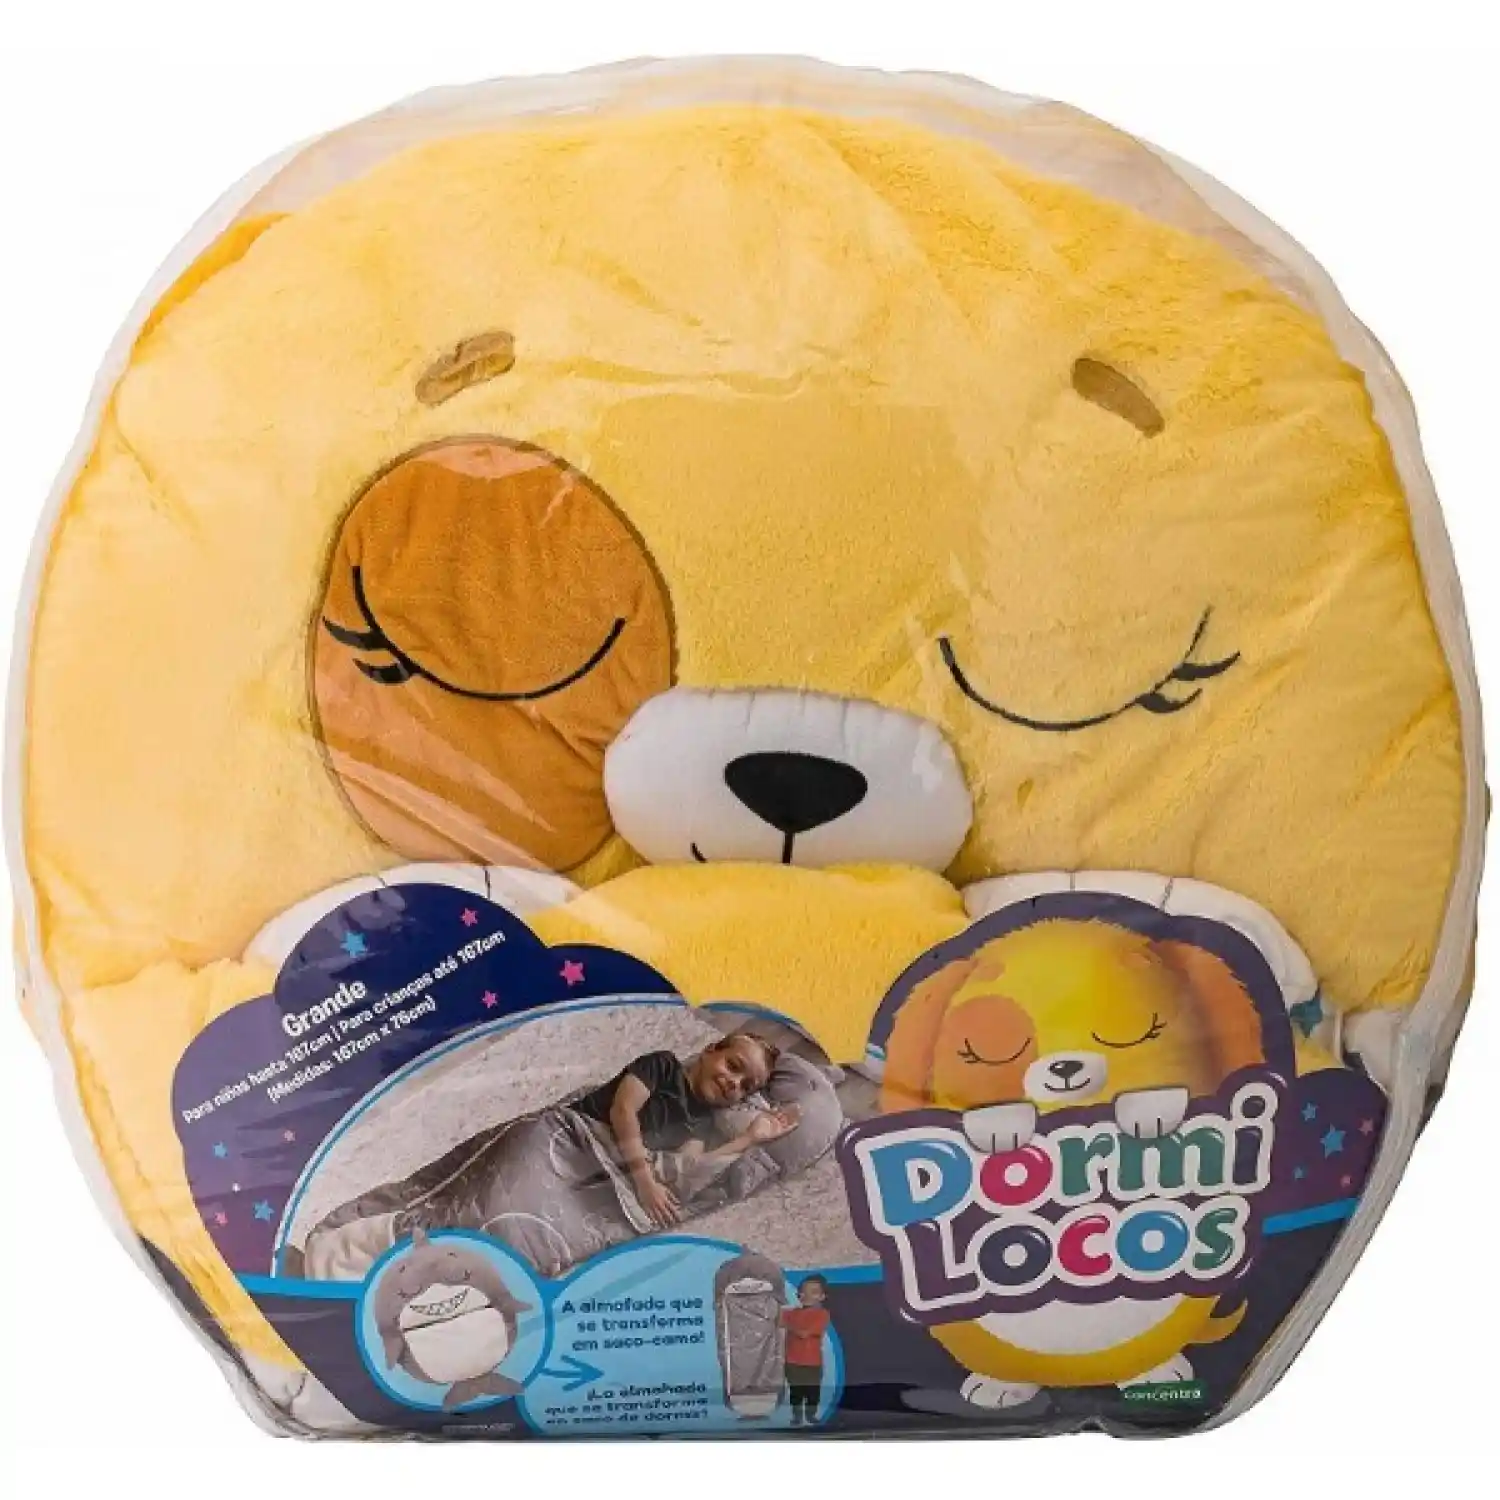 Dormilocos almohada y bolsa de dormir - Perro Colombia